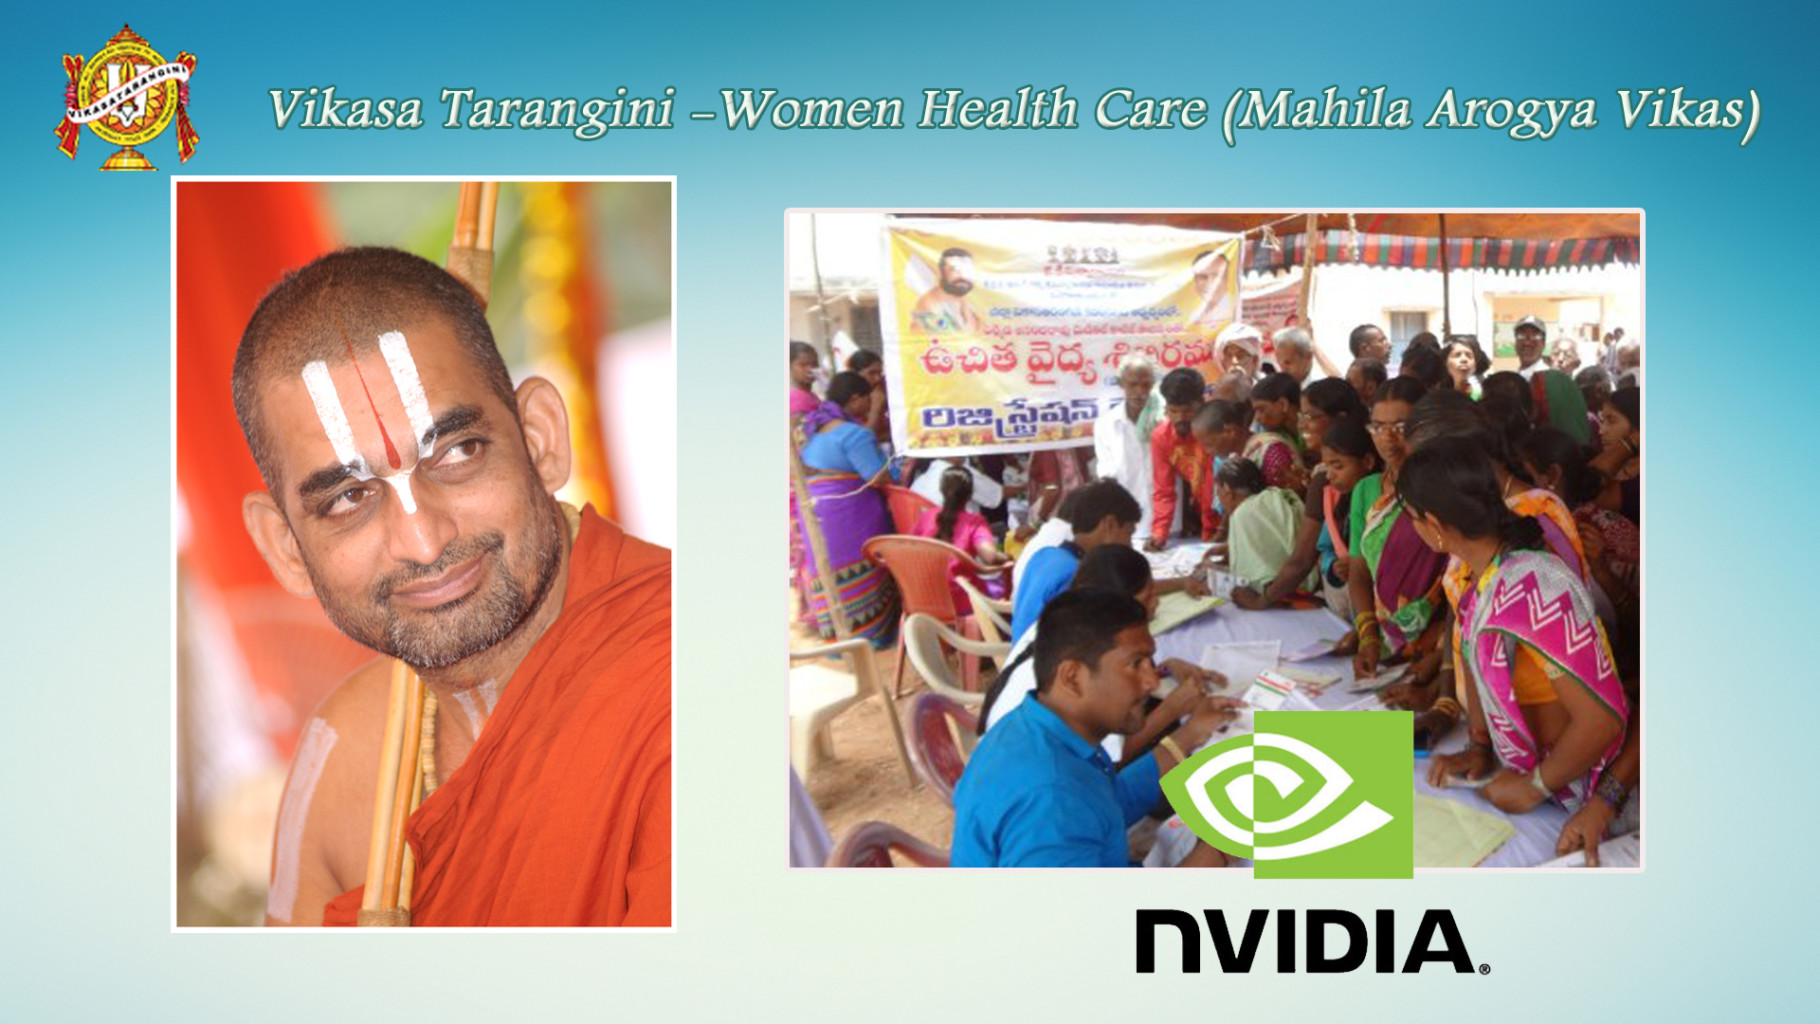 Vikasa Tarangini VT Seva wins NVIDIA grant of 50000 towards conducting 50 more medical camps